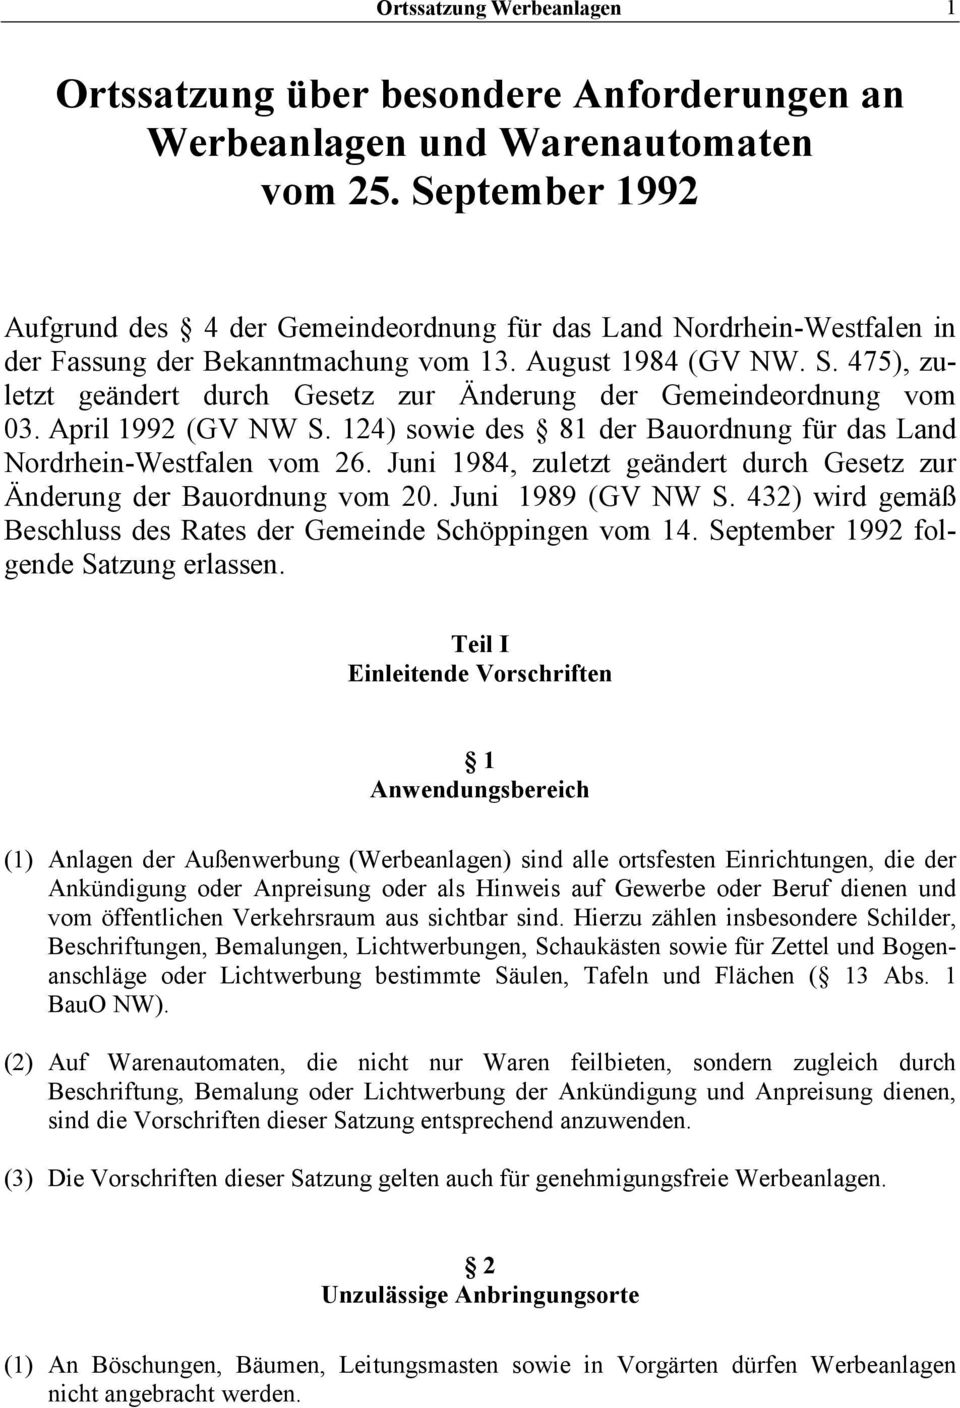 475), zuletzt geändert durch Gesetz zur Änderung der Gemeindeordnung vom 03. April 1992 (GV NW S. 124) sowie des 81 der Bauordnung für das Land Nordrhein-Westfalen vom 26.